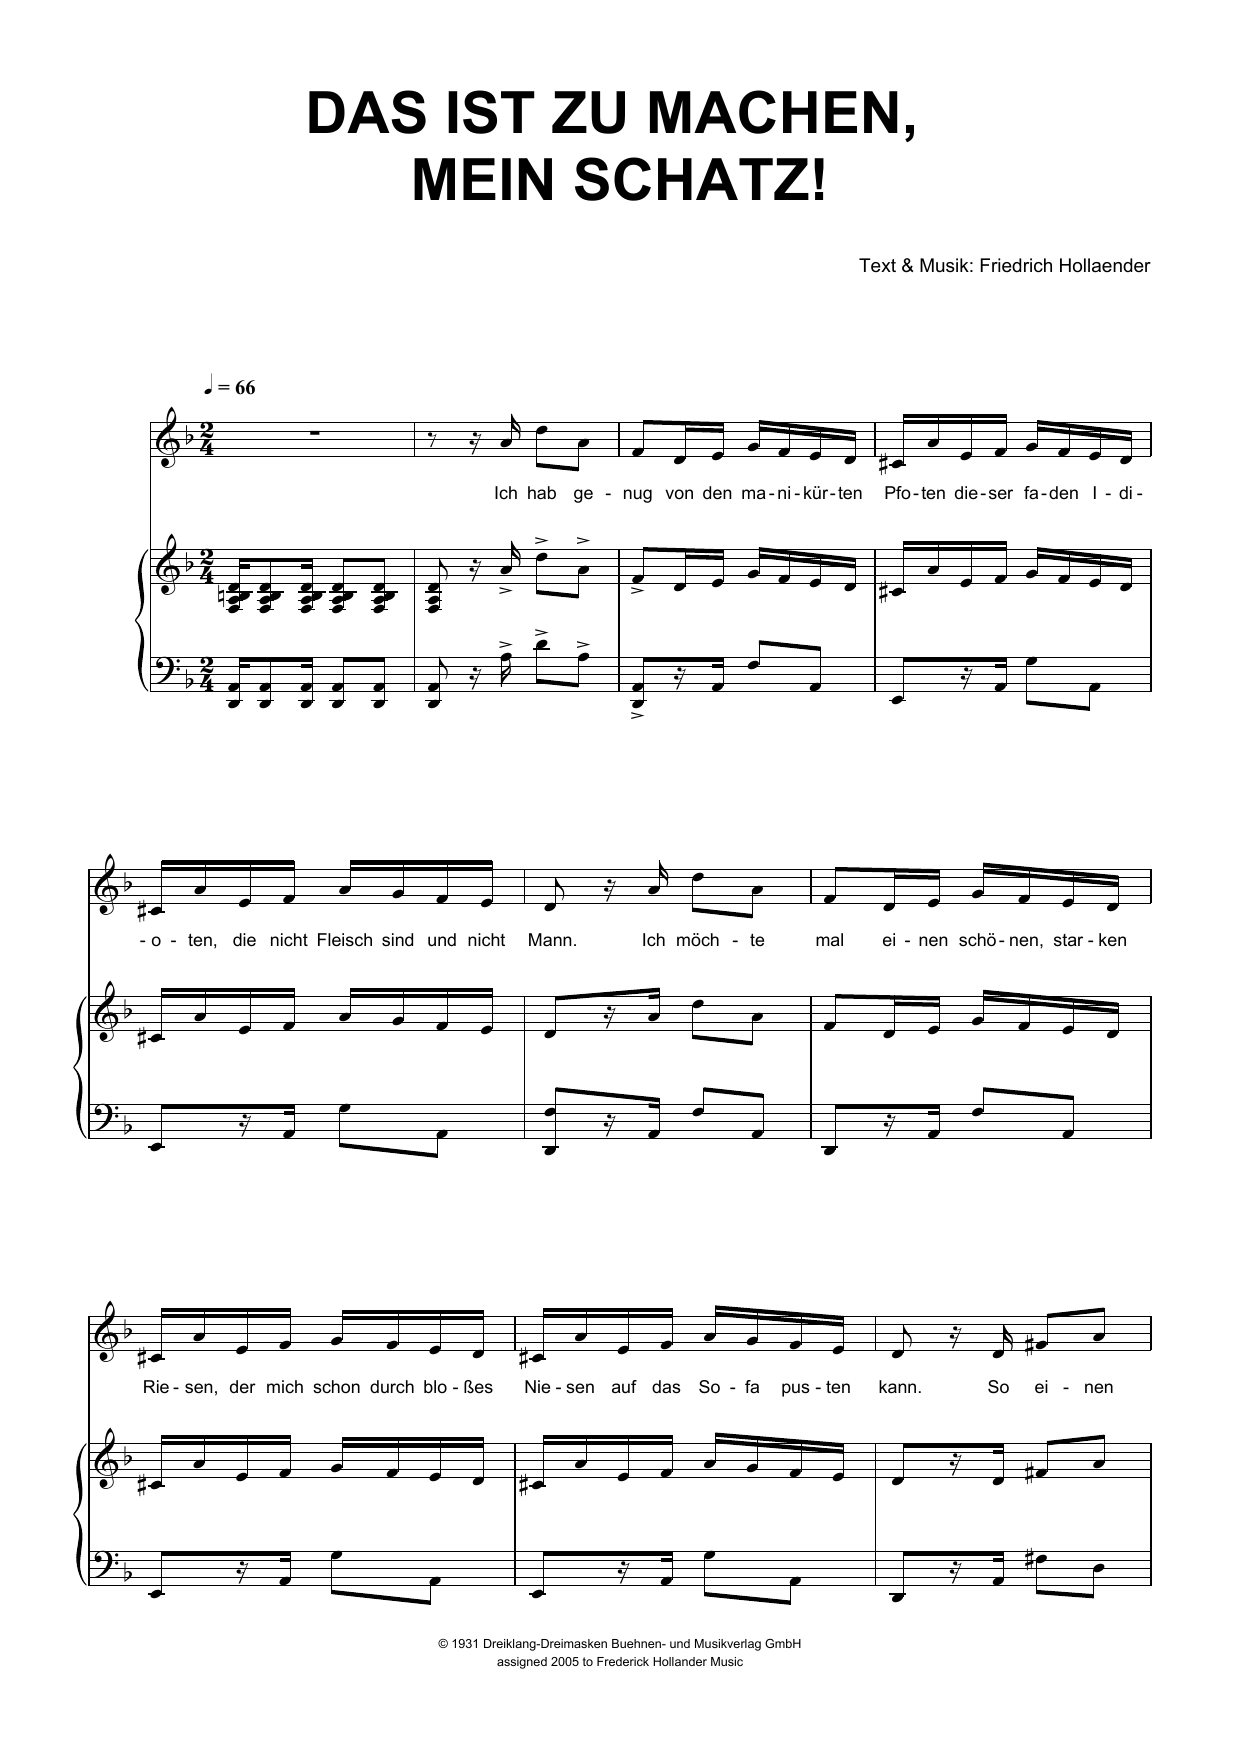 Friedrich Hollaender Das Ist Zu Machen, Mein Schatz! Sheet Music Notes & Chords for Piano & Vocal - Download or Print PDF